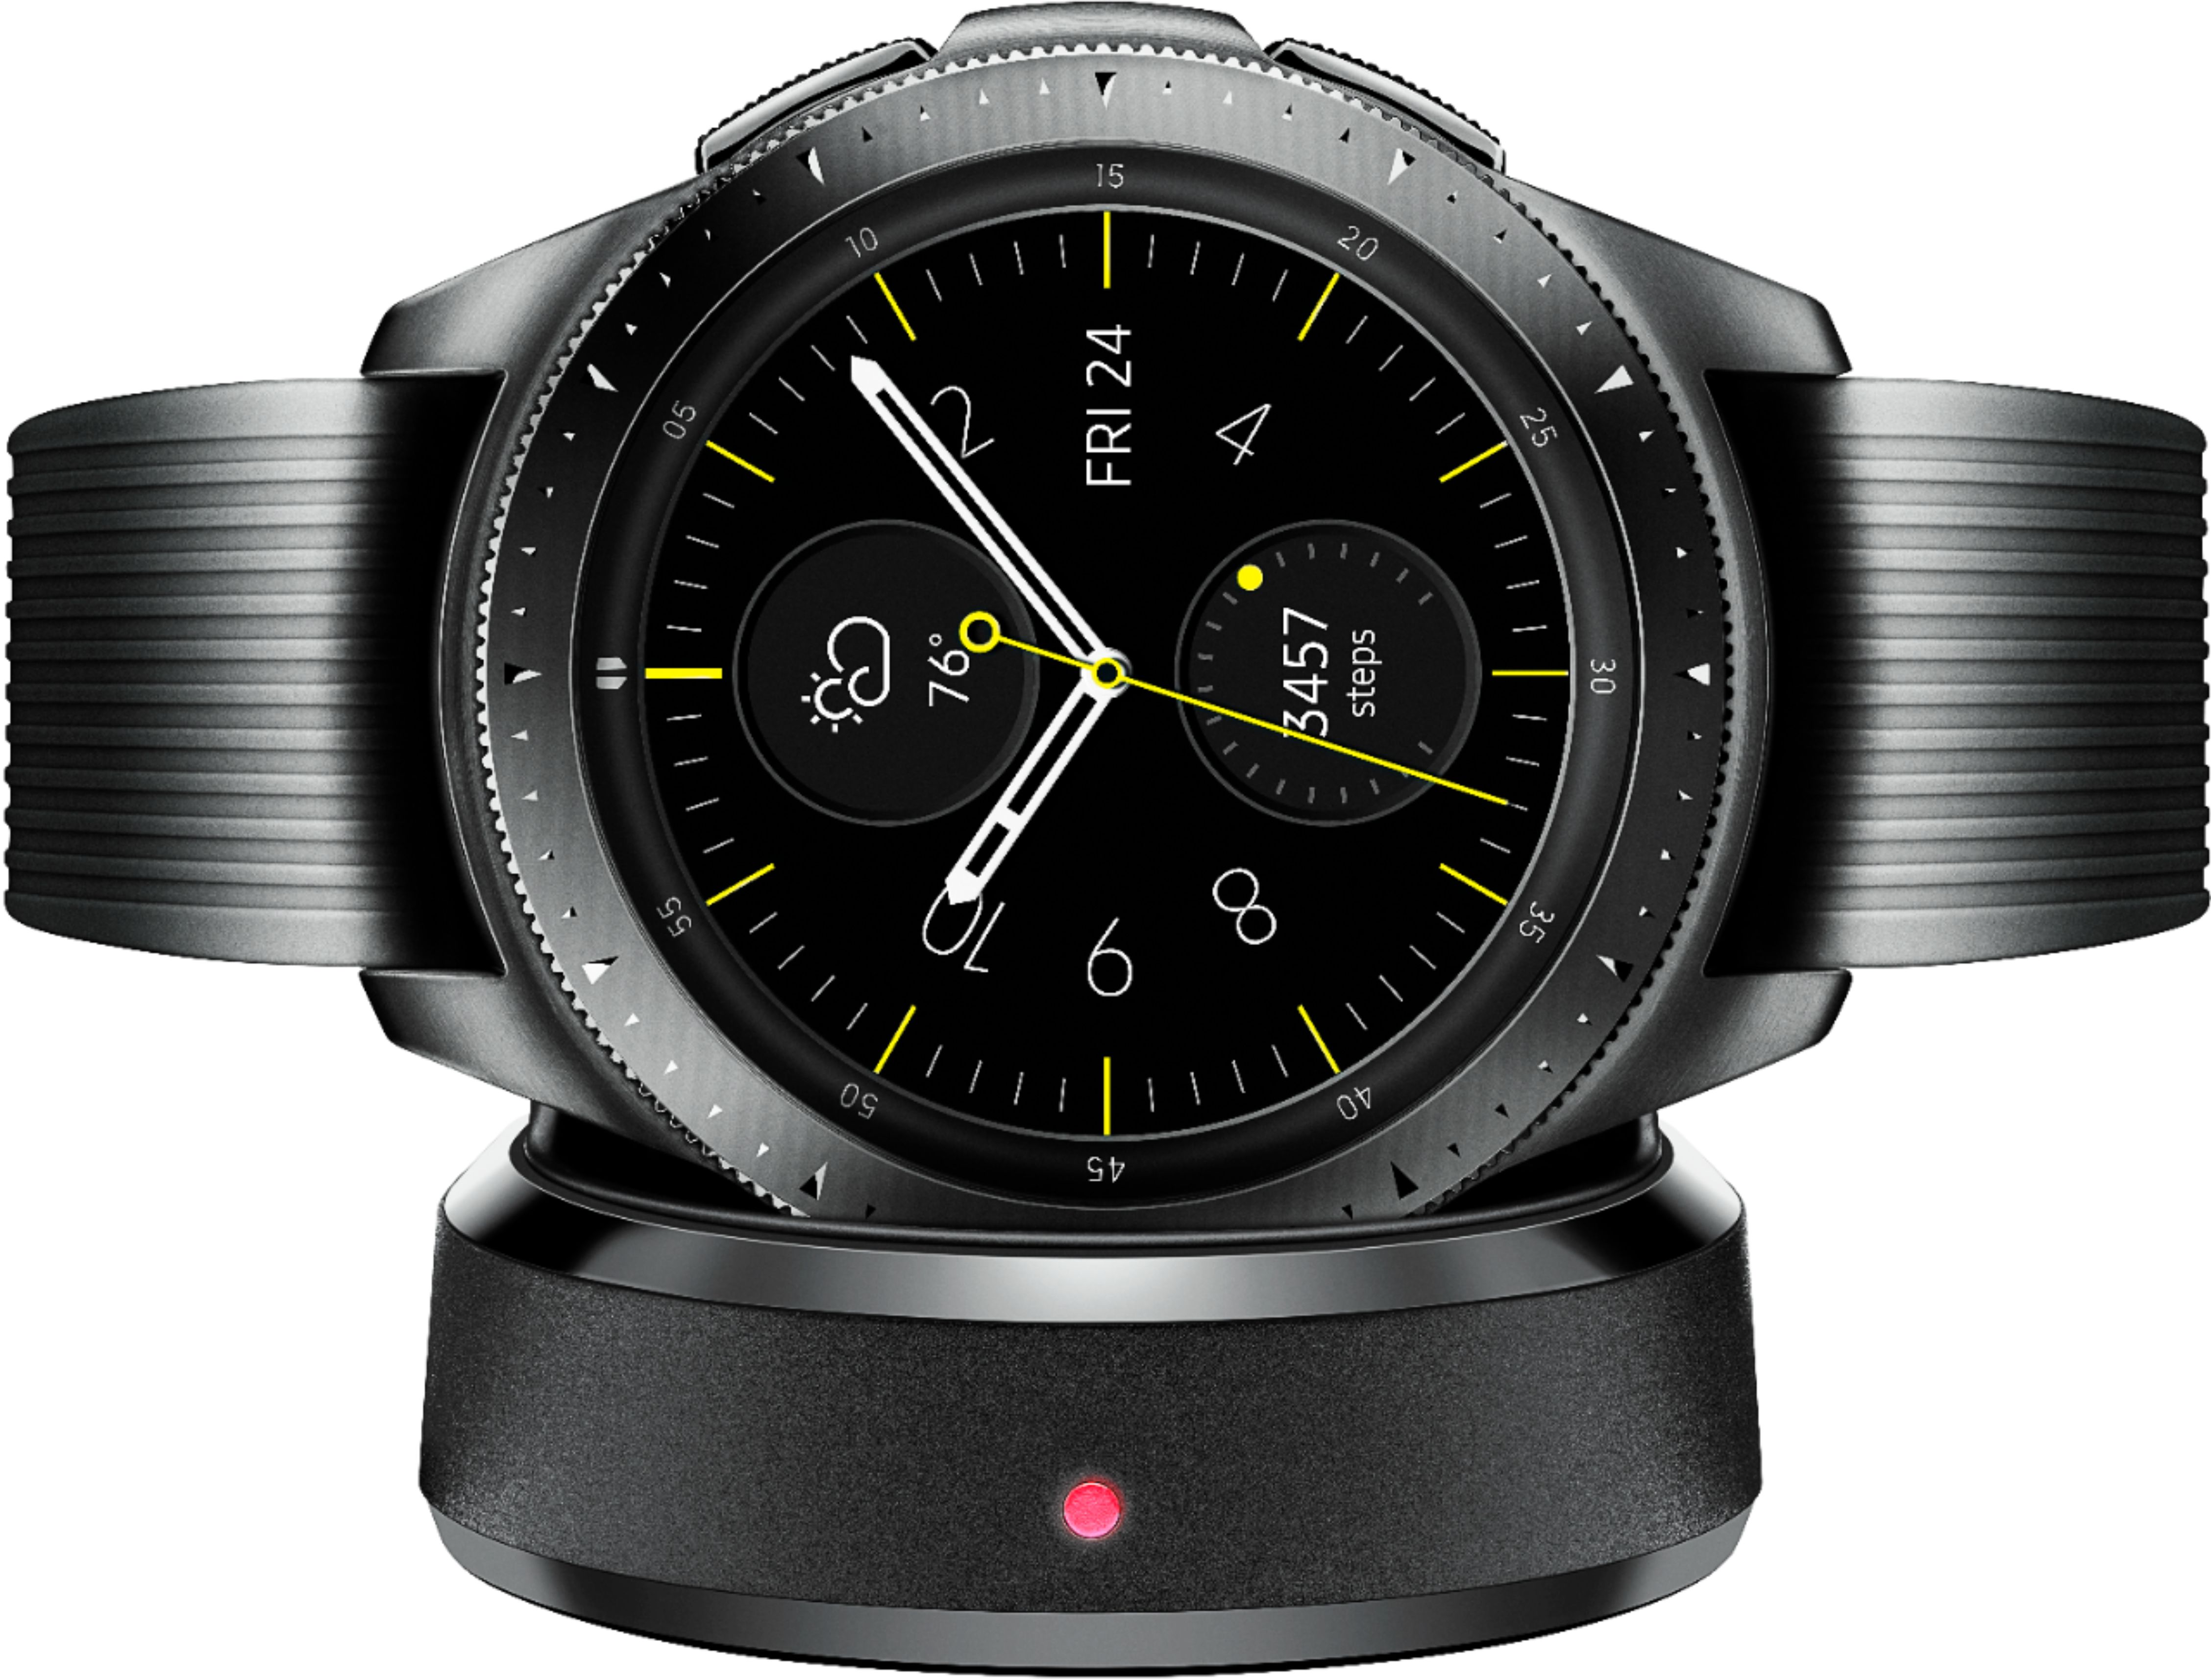 Buy: Samsung Galaxy Watch Smartwatch 42mm Stainless Steel LTE (unlocked) Midnight Black SM-R815UZKAXAR